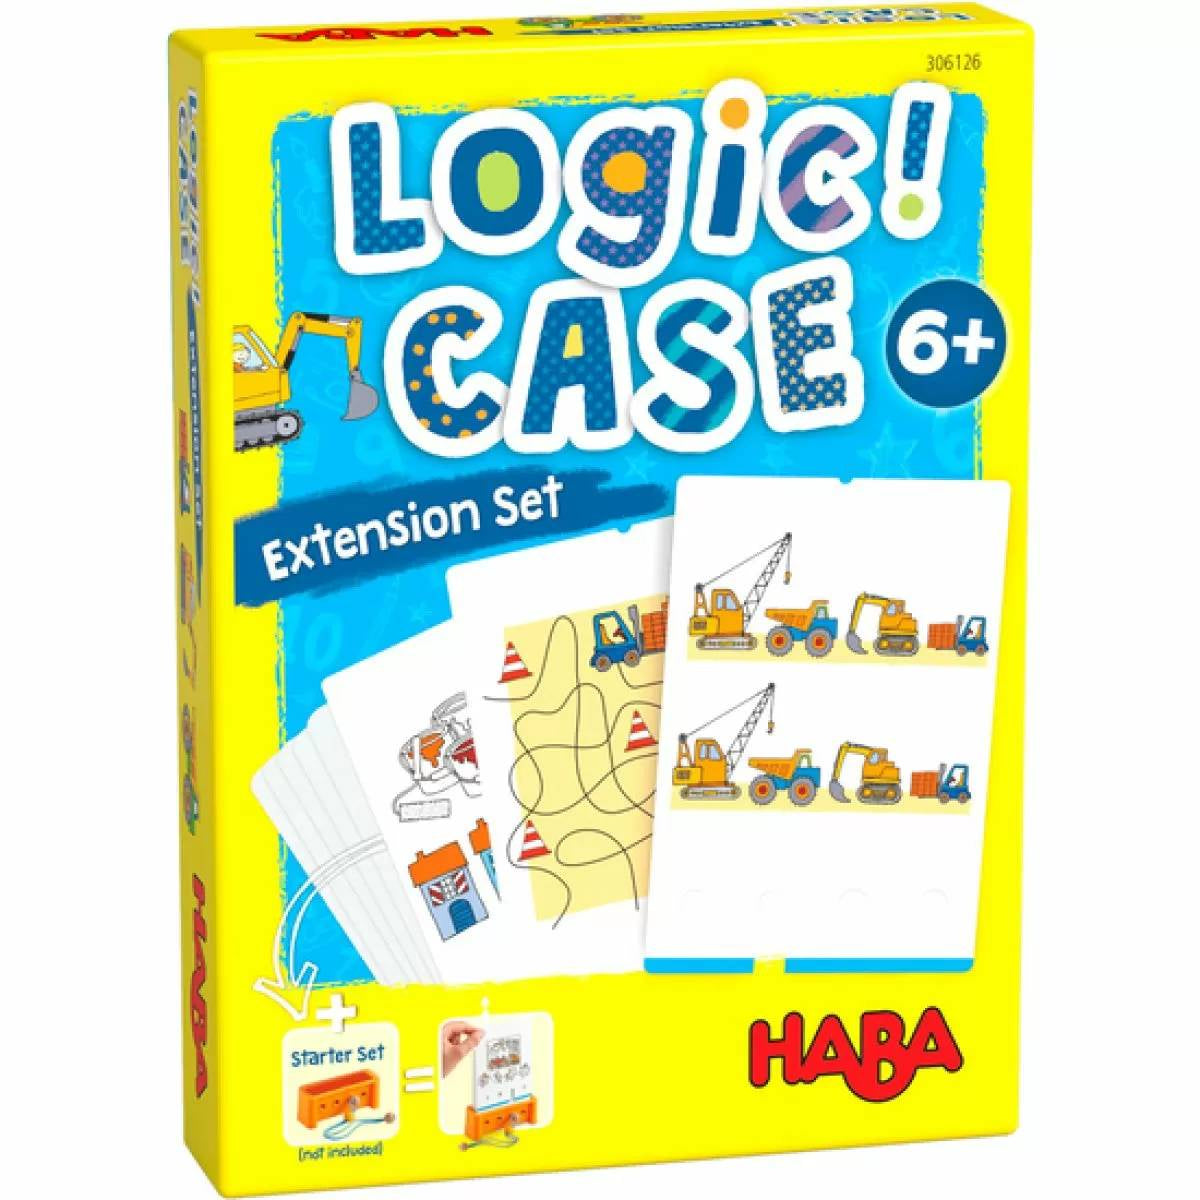 Logic Case Expansion Set 6+ Construction Site